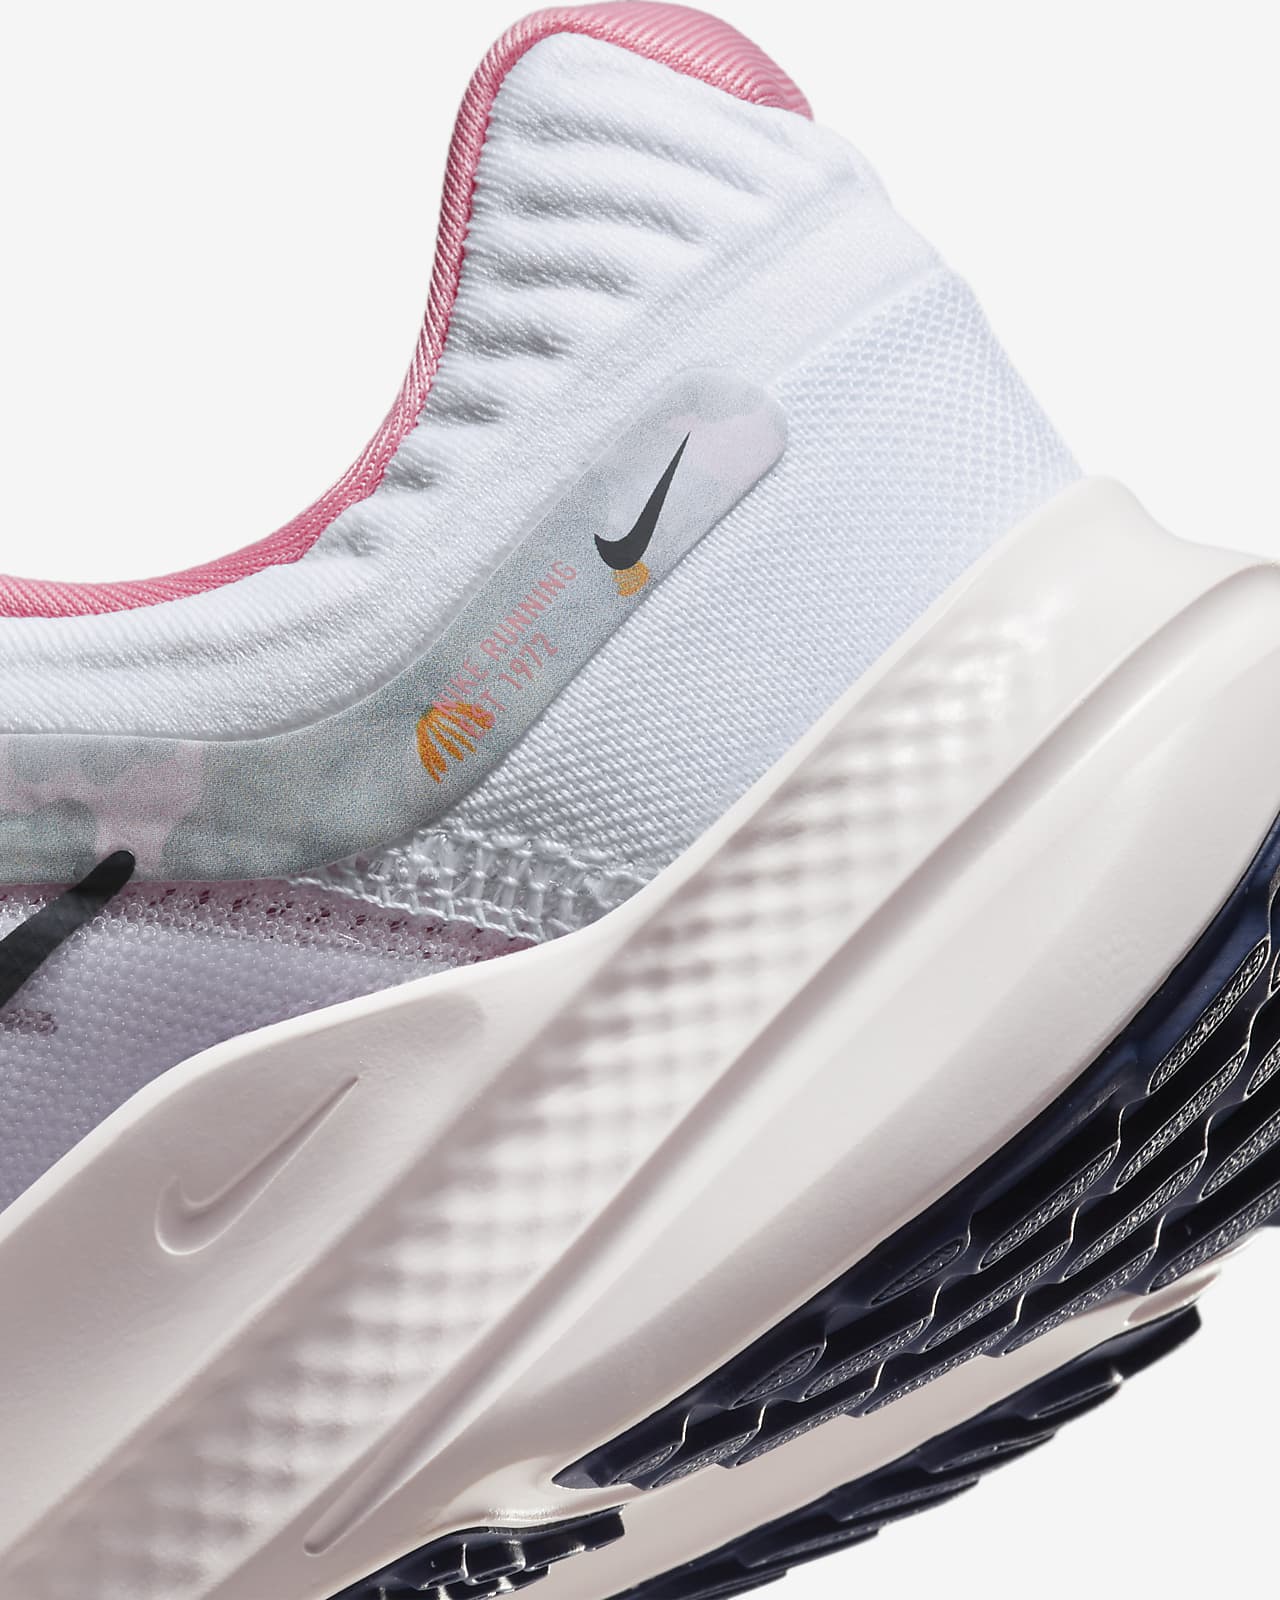 Nike Quest 3 Review Running Shoes | Runner Expert|